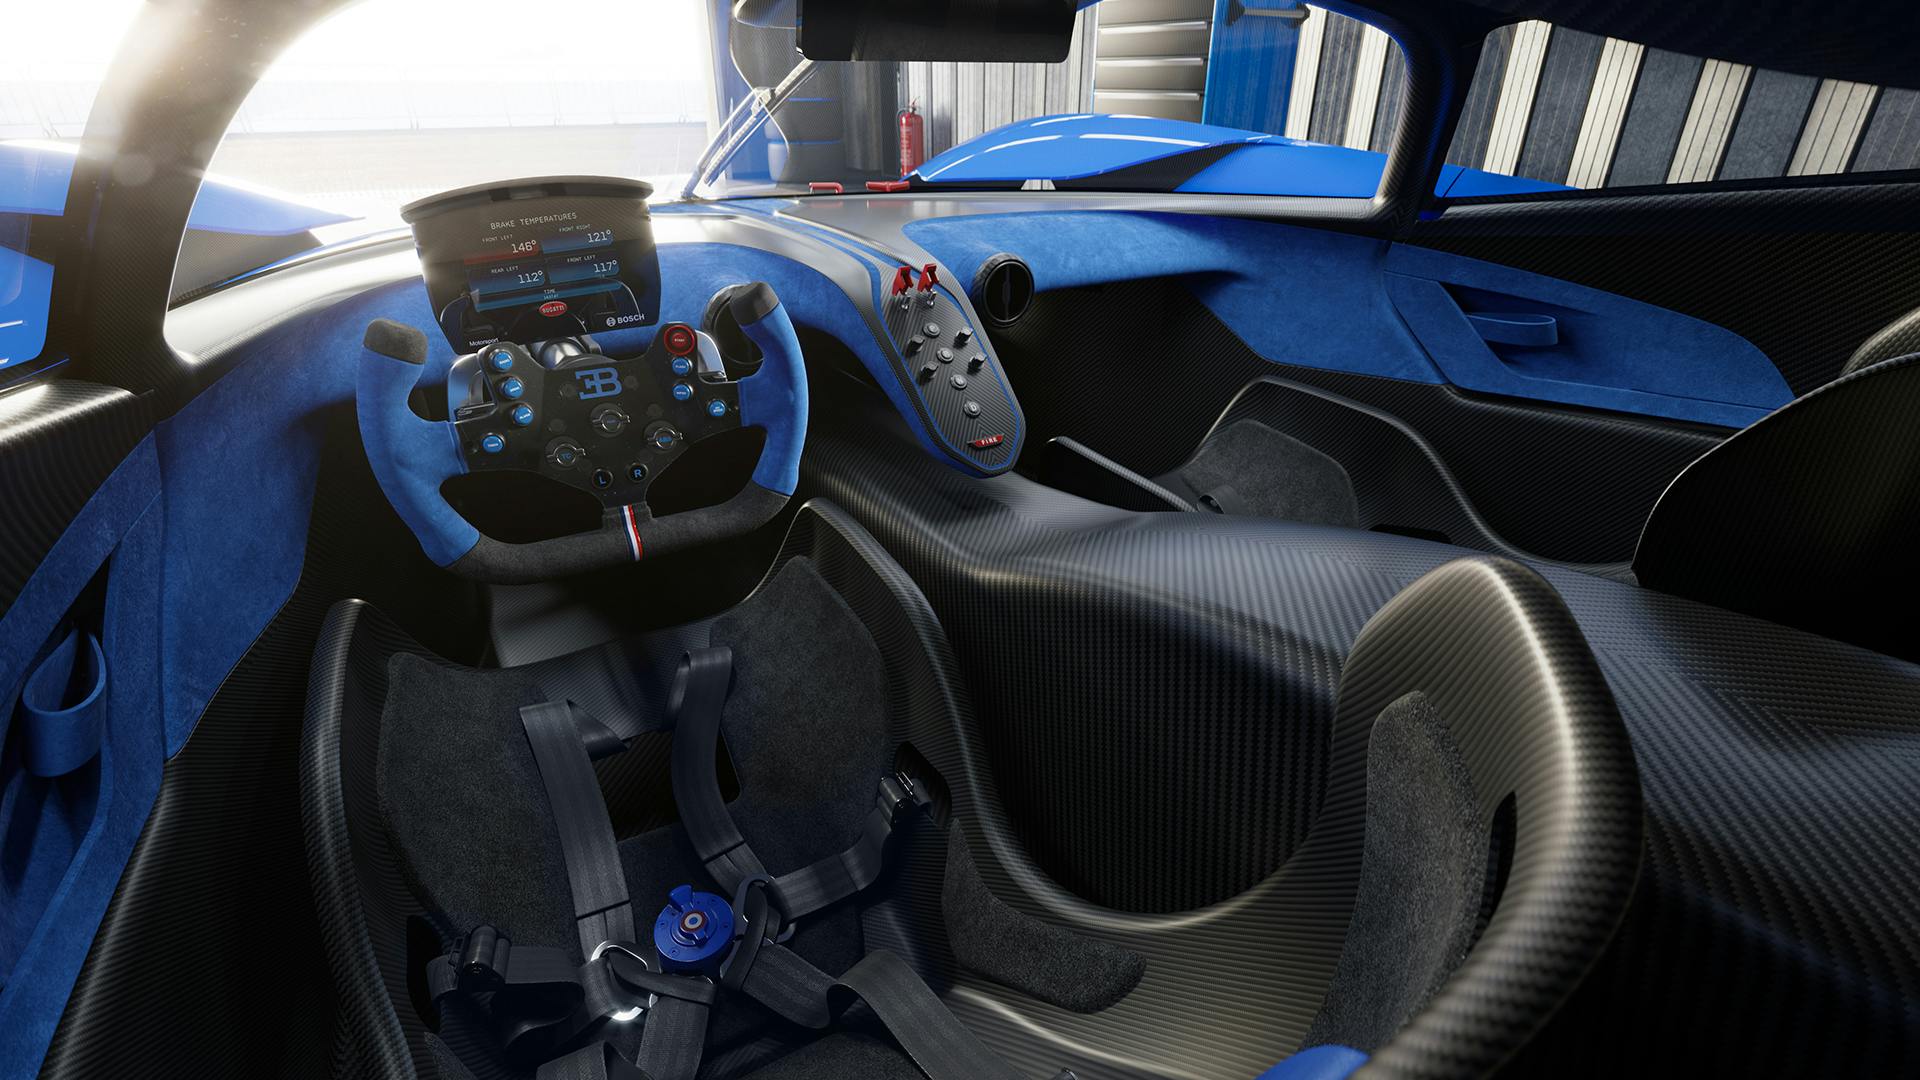 Bugatti bolide interior cockpit